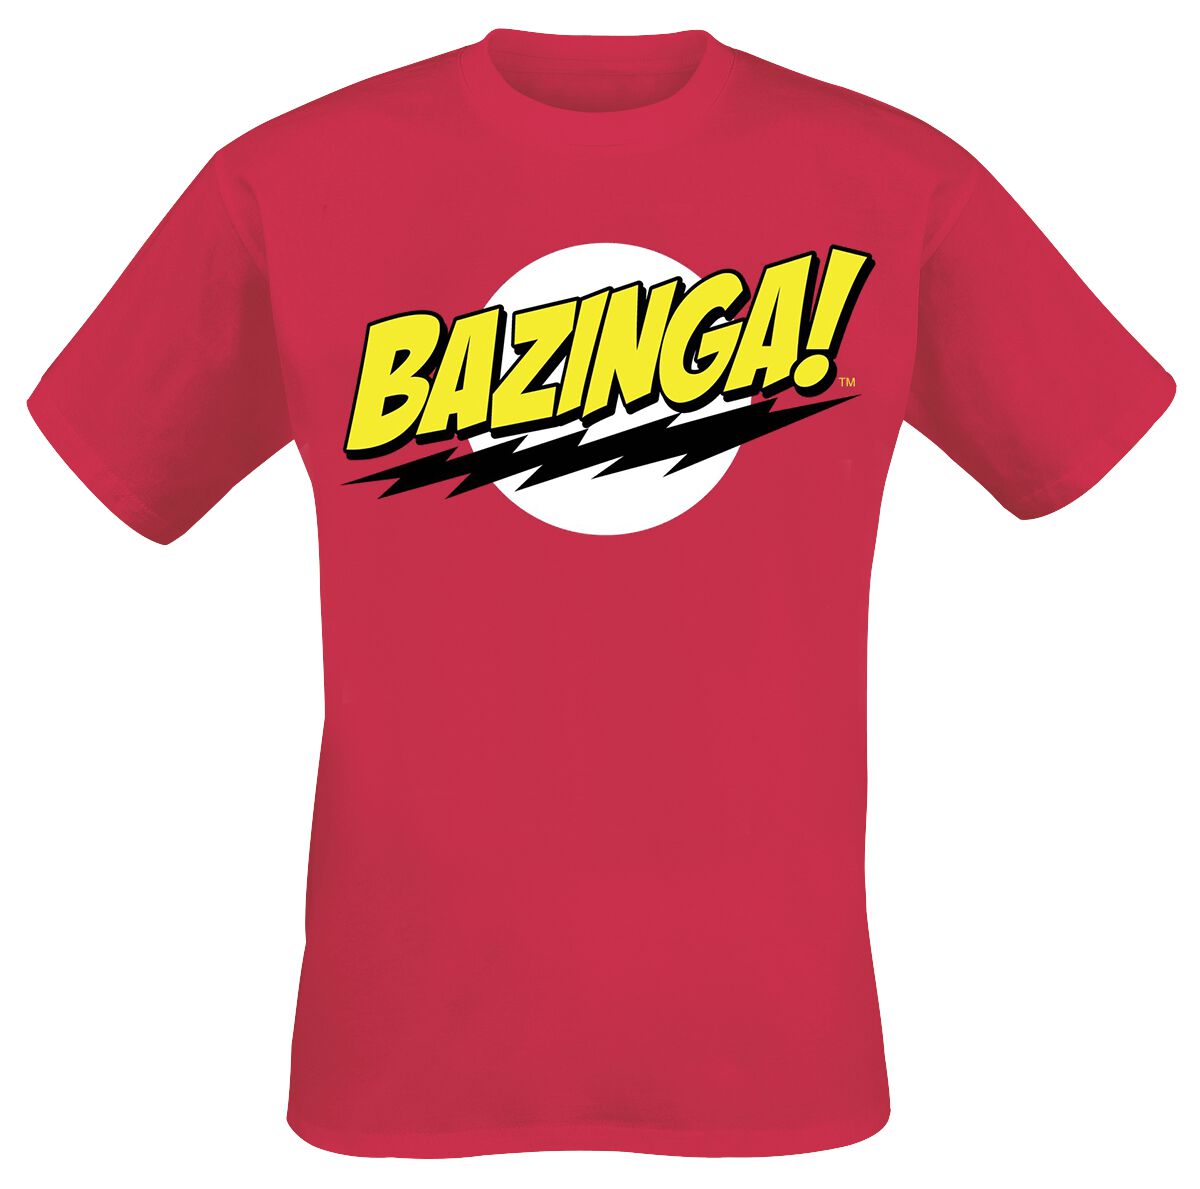 The Big Bang Theory T-Shirt - Bazinga - 4XL - für Männer - Größe 4XL - rot  - Lizenzierter Fanartikel